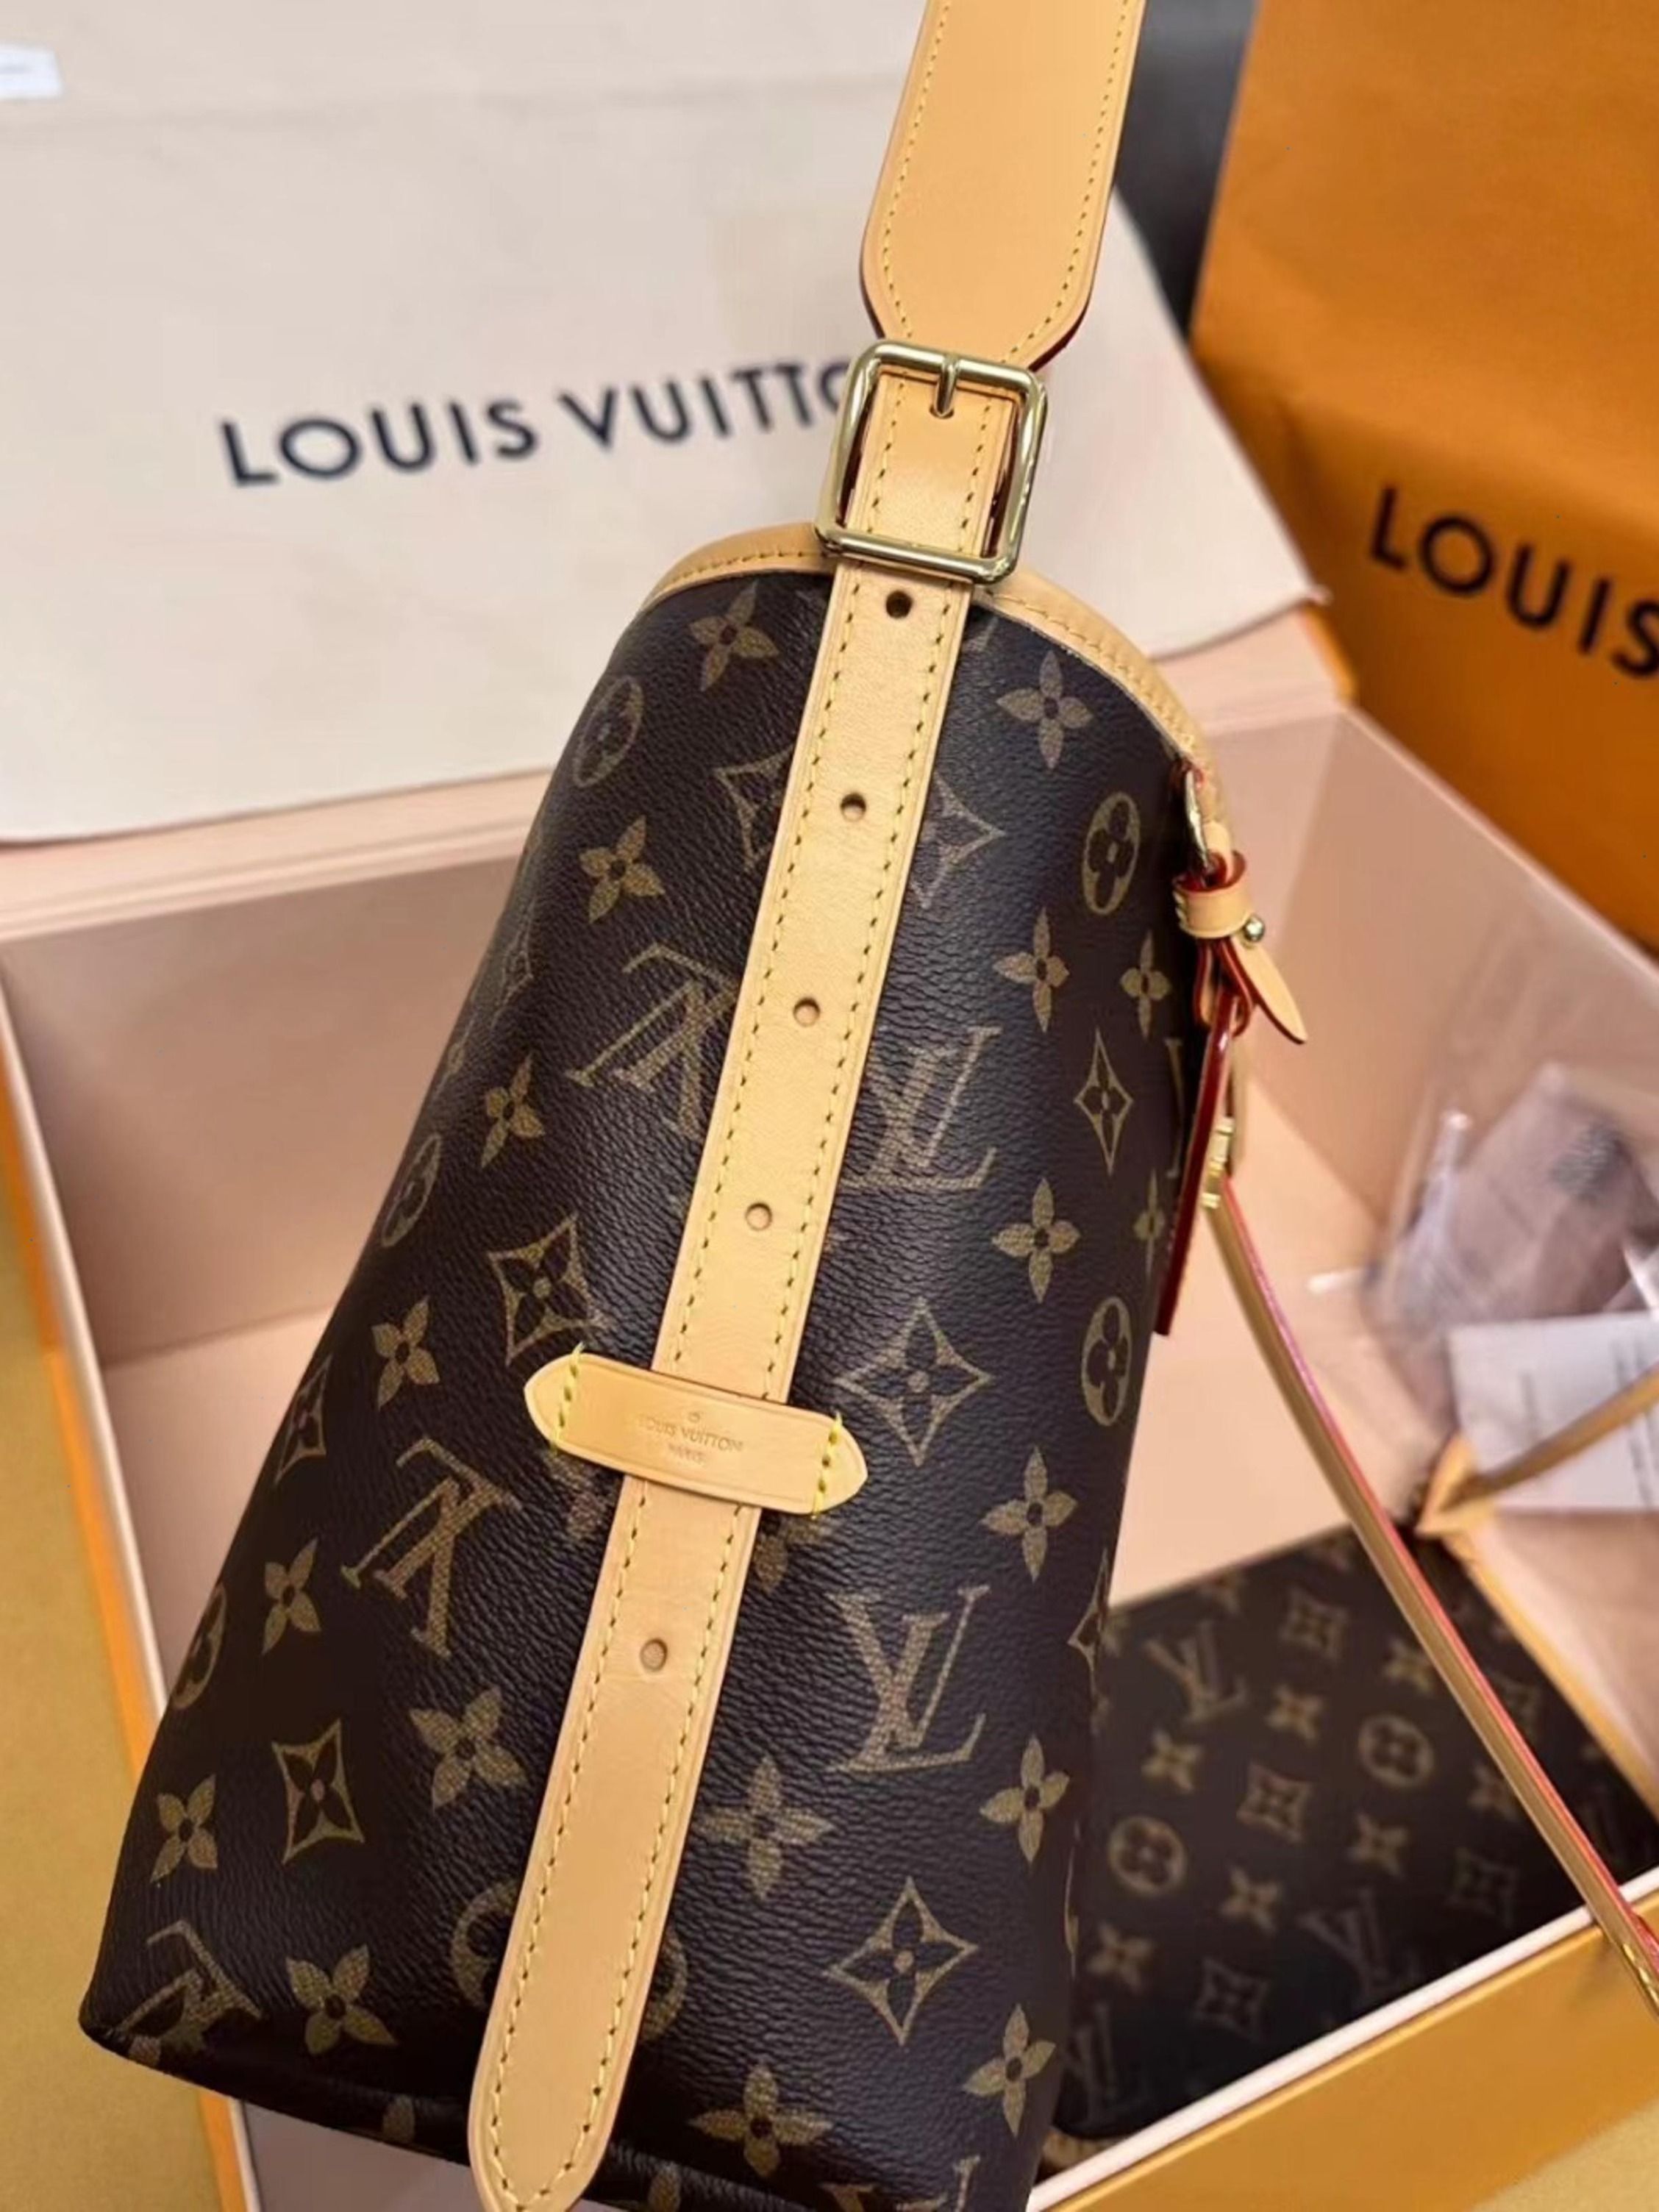 Unboxing Louis Vuitton Nano Noe, Review and comparison 